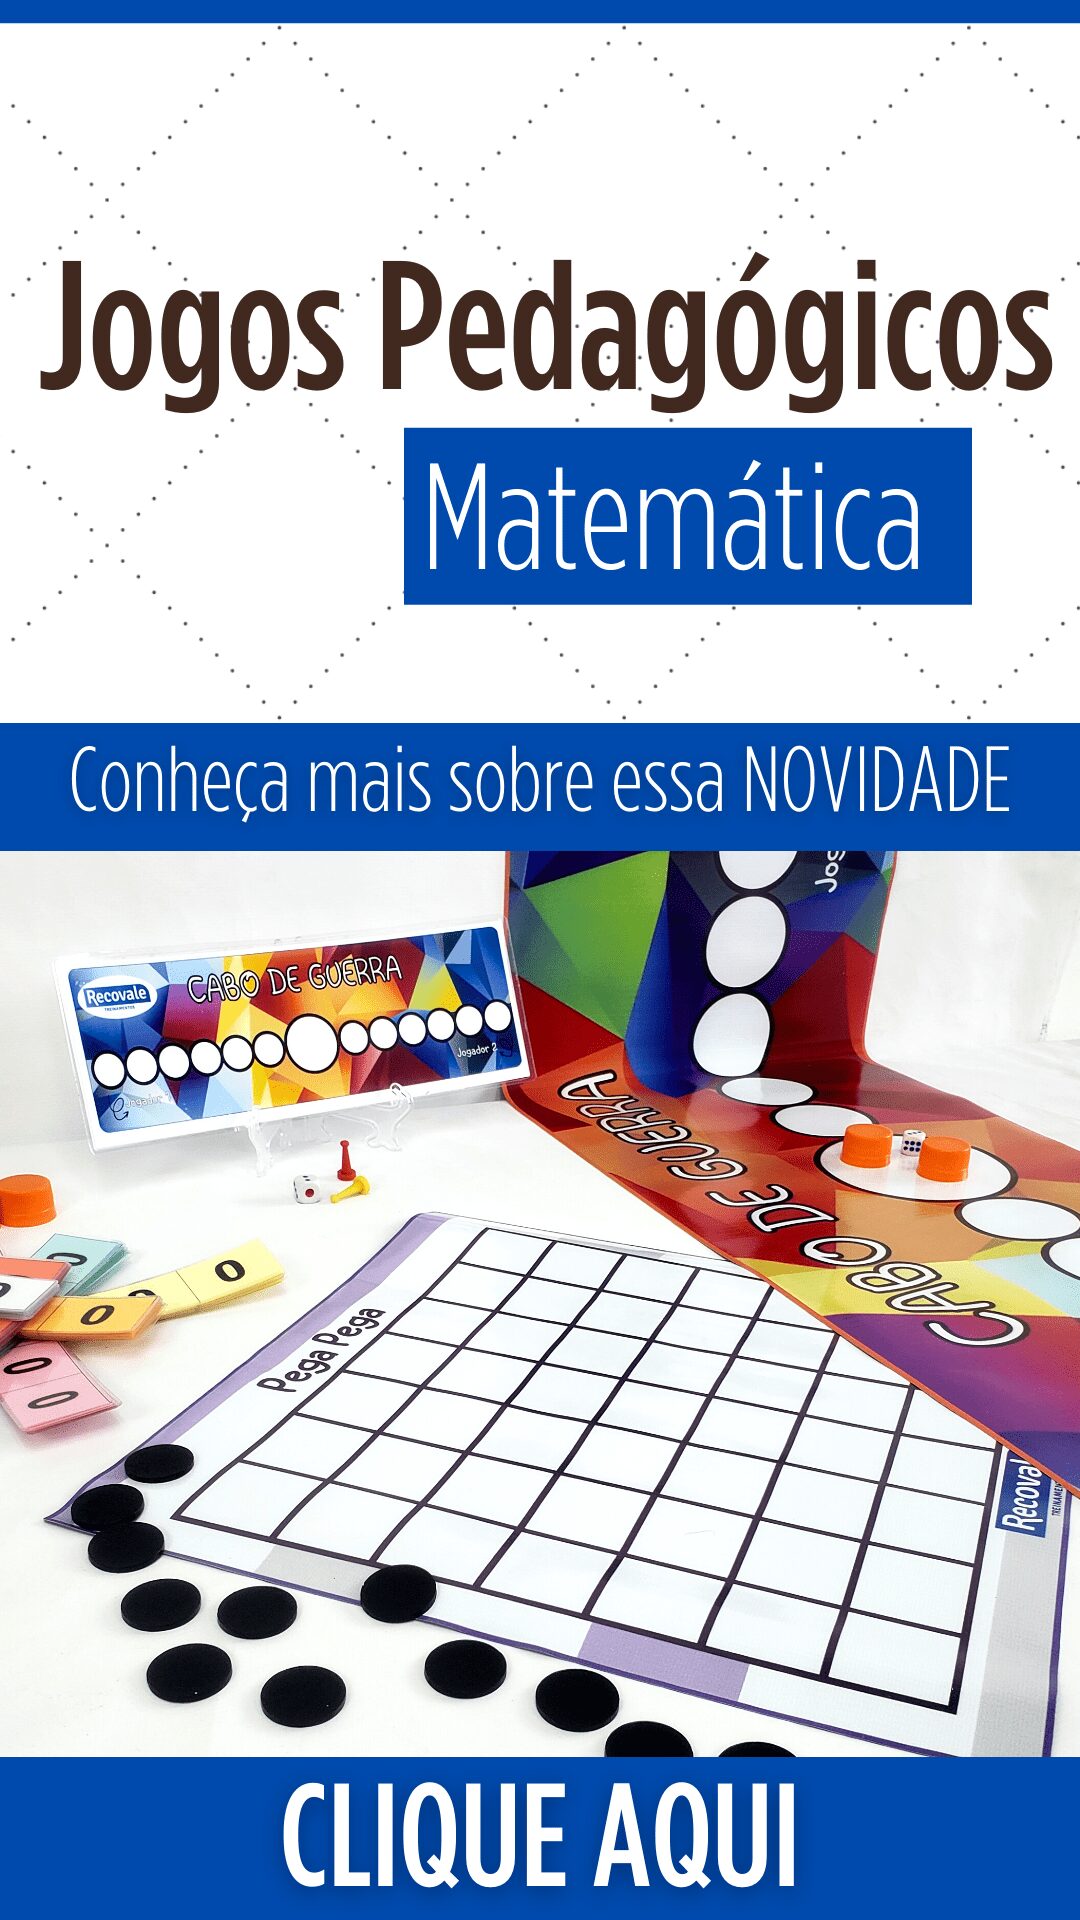 jogos de matematica para fazer em sala de aula - Pesquisa Google  Desafios  de matemática, Jogos matemáticos, Jogos educativos matemática